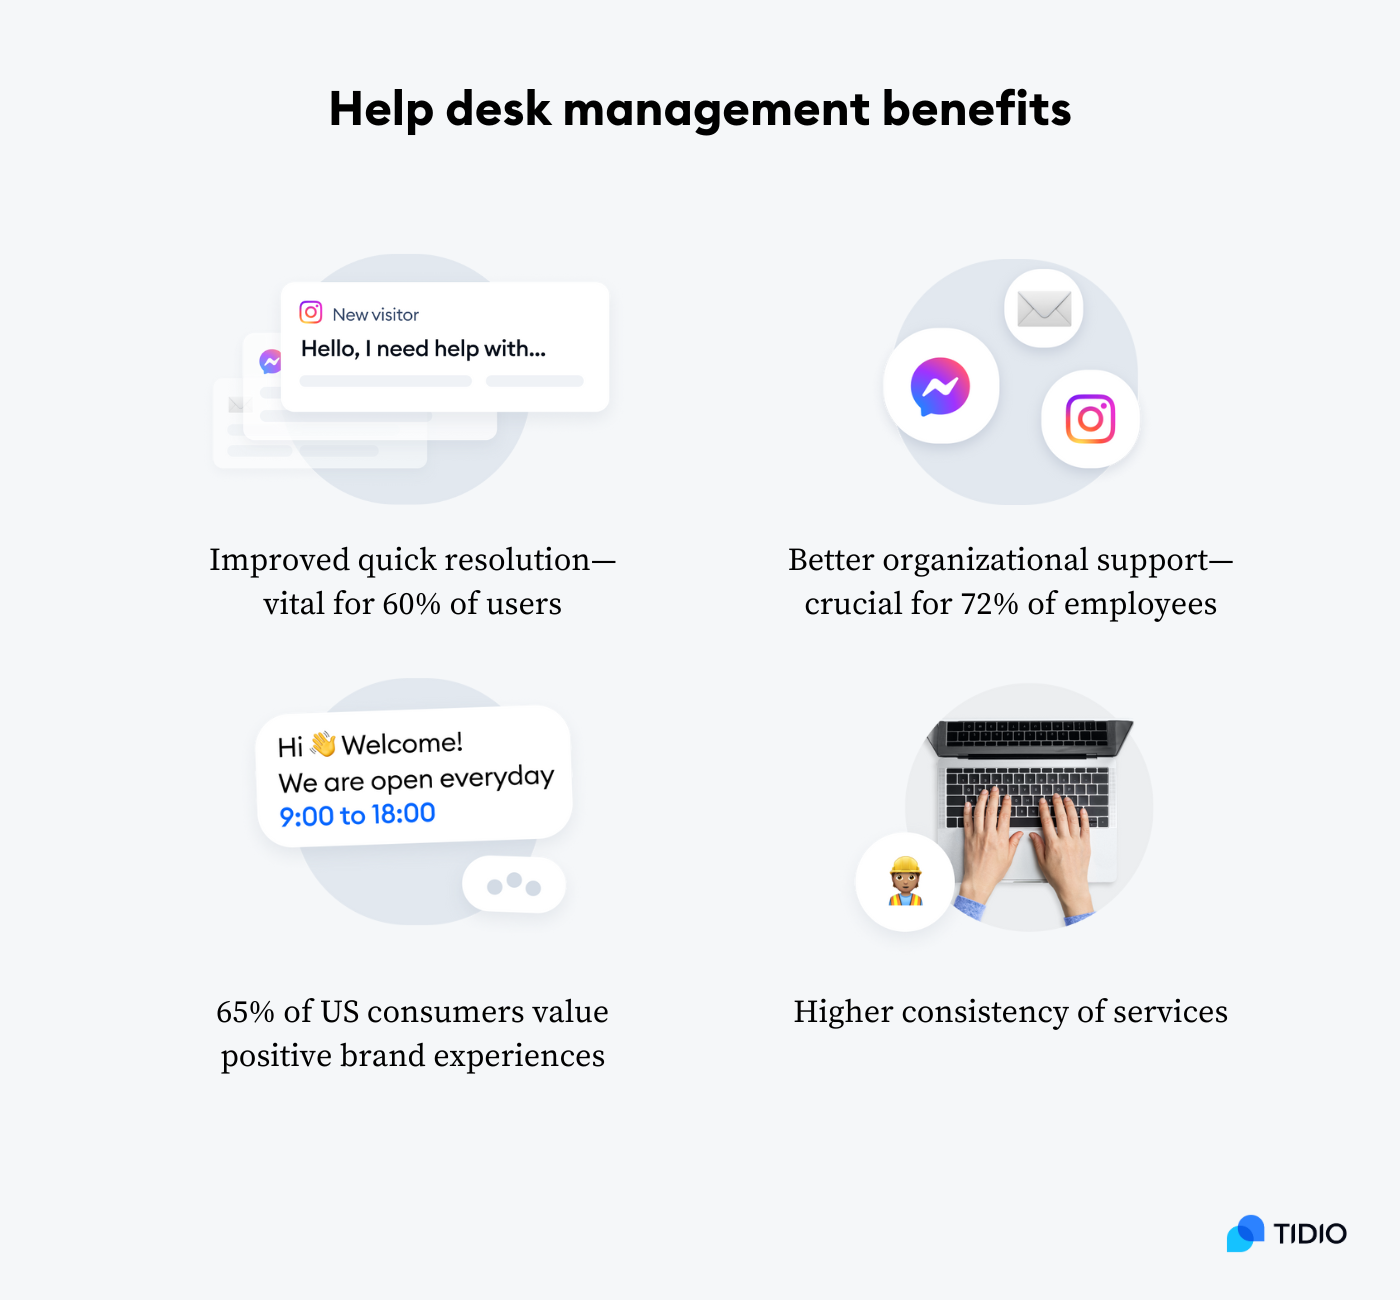 Benefits of proper help desk management